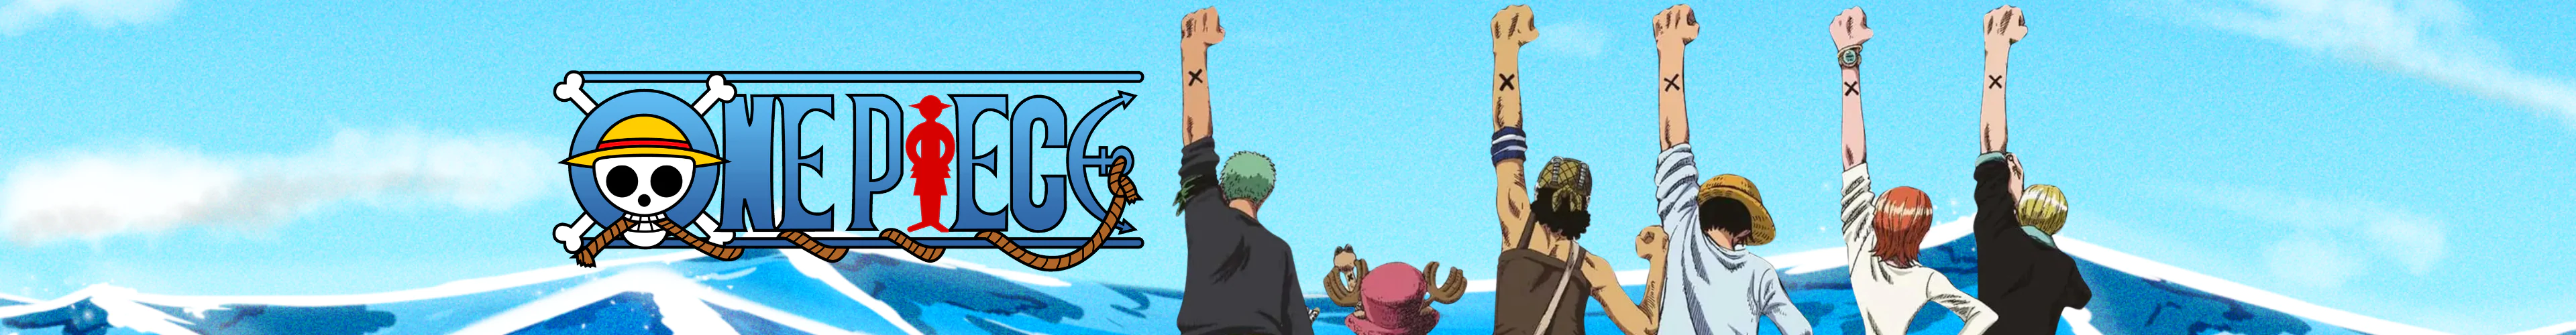 One Piece regenschirme banner